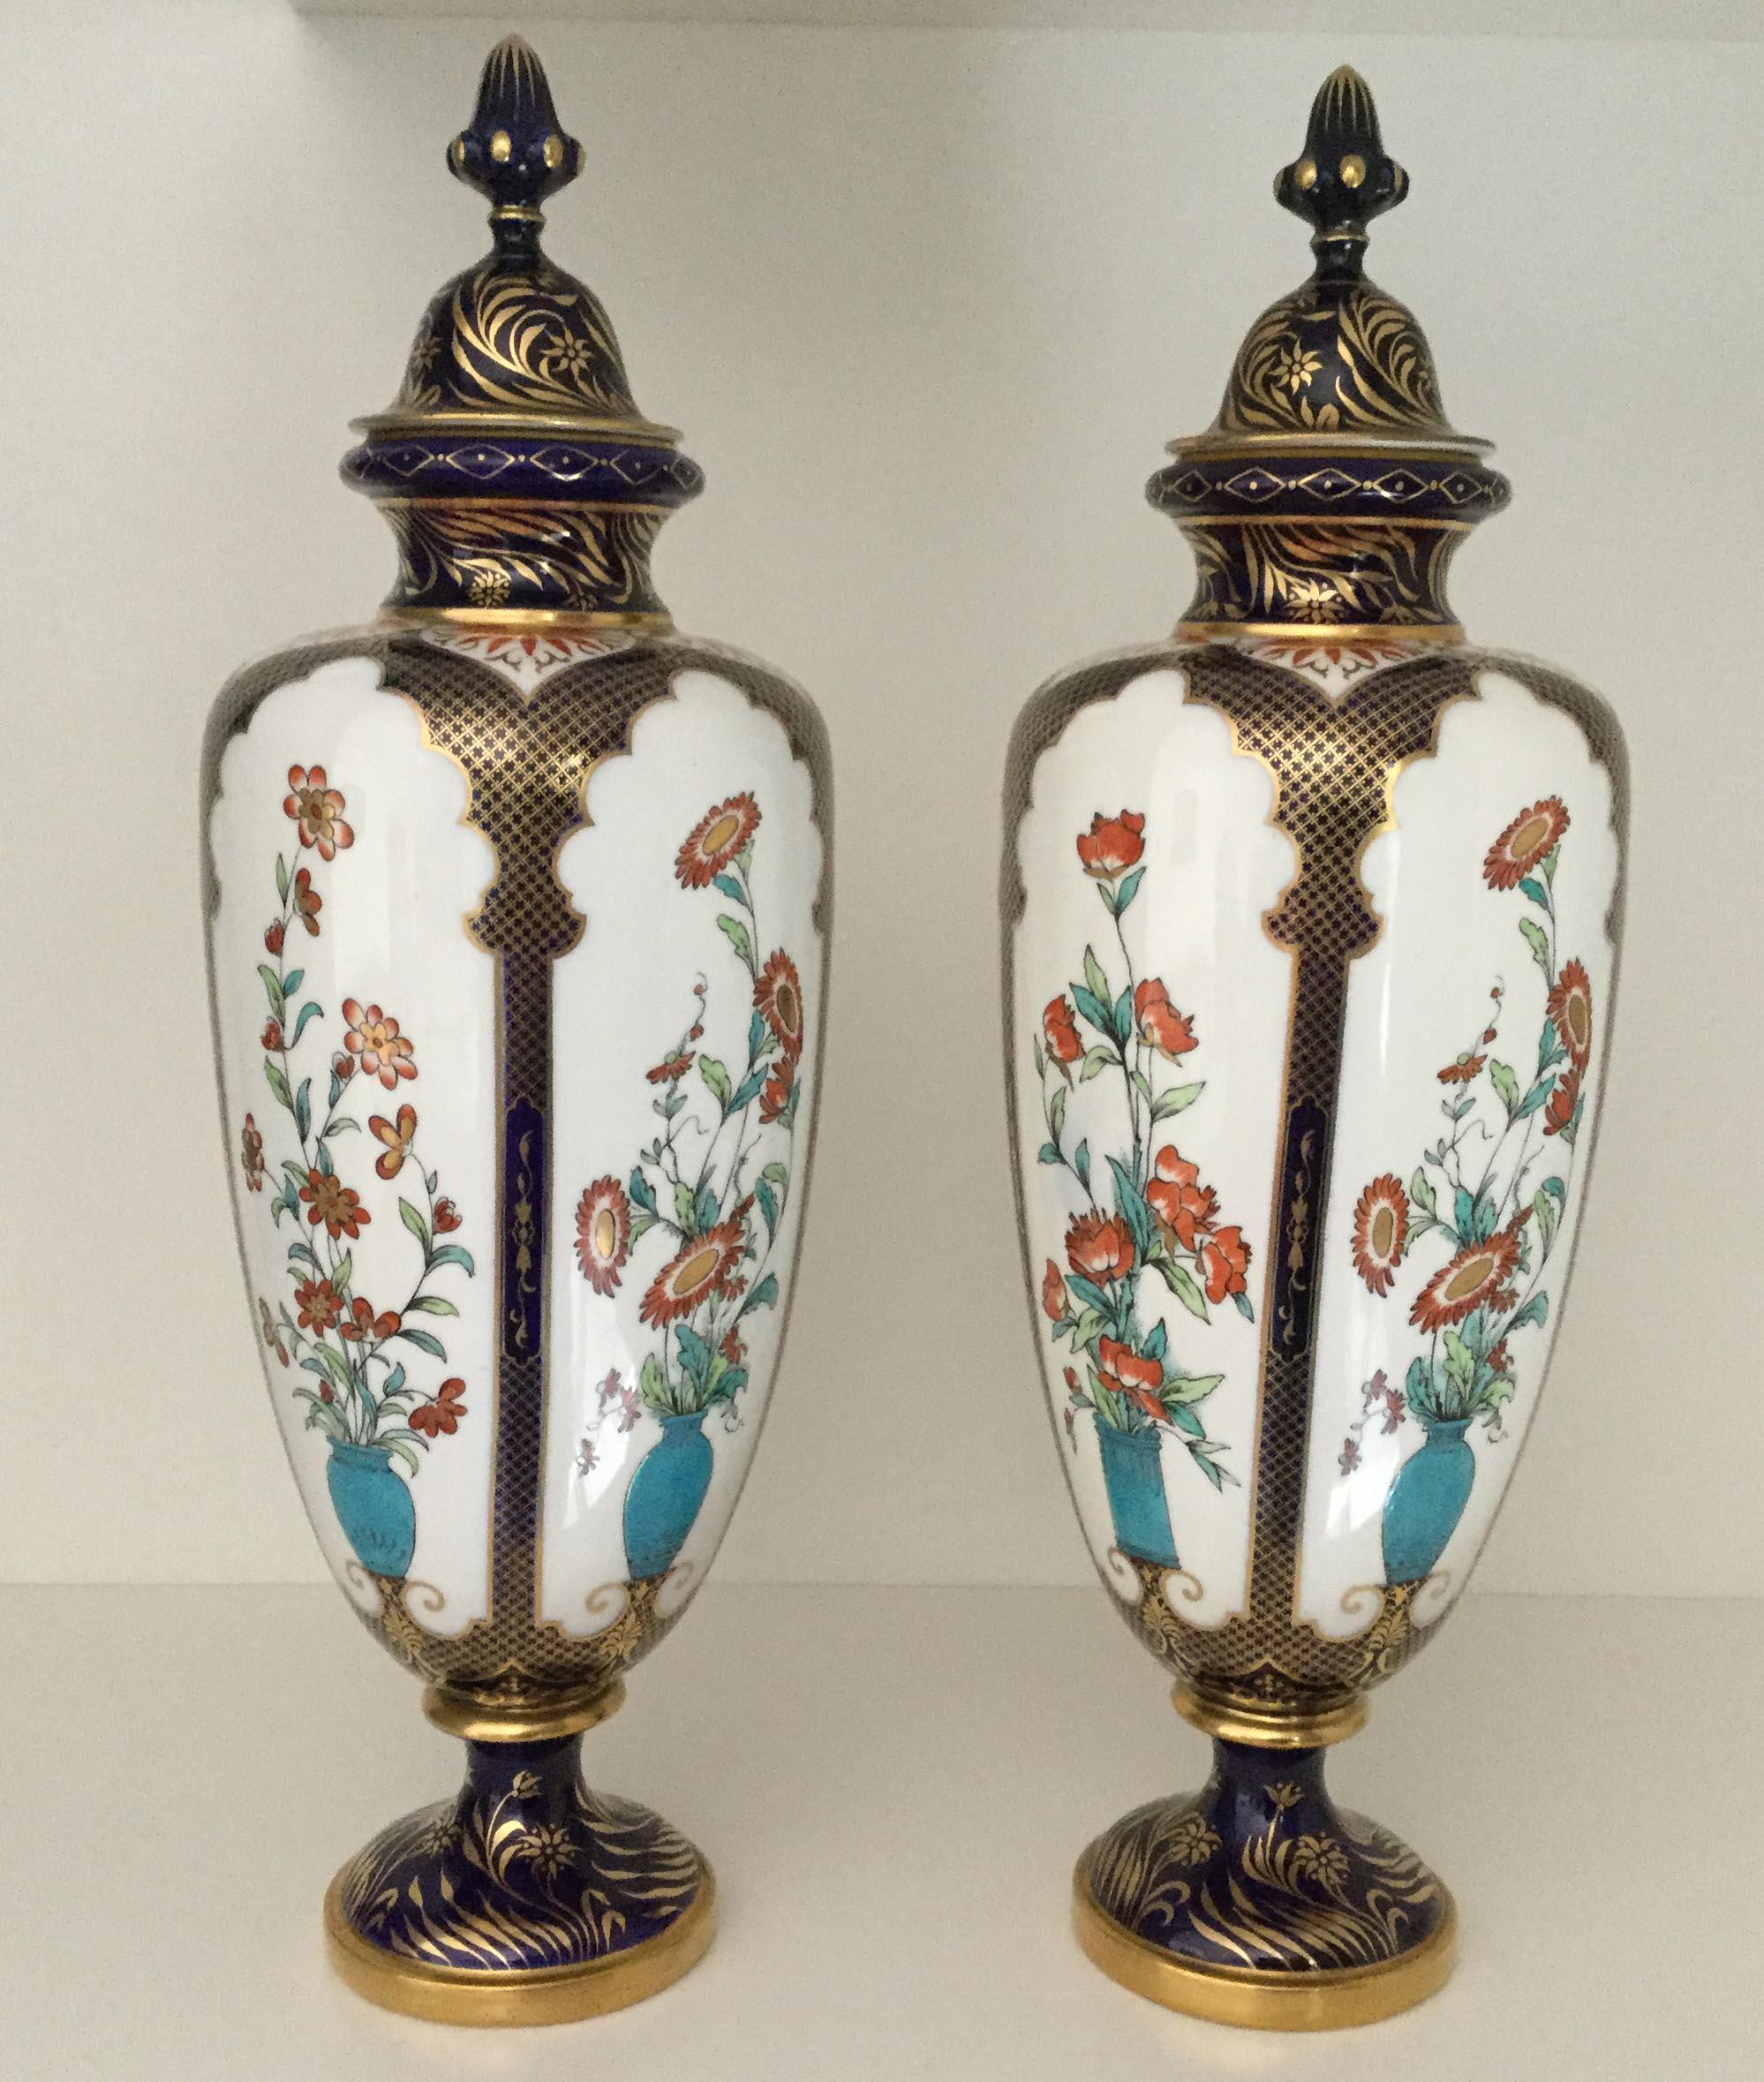 Rare paire de vases décoratifs en porcelaine Royal Worcester du XIXe siècle, décorés dans le goût japonais, datés de 1896-1897.

Chaque vase est décoré de cinq panneaux blancs contenant des compositions florales rouges colorées dans des urnes